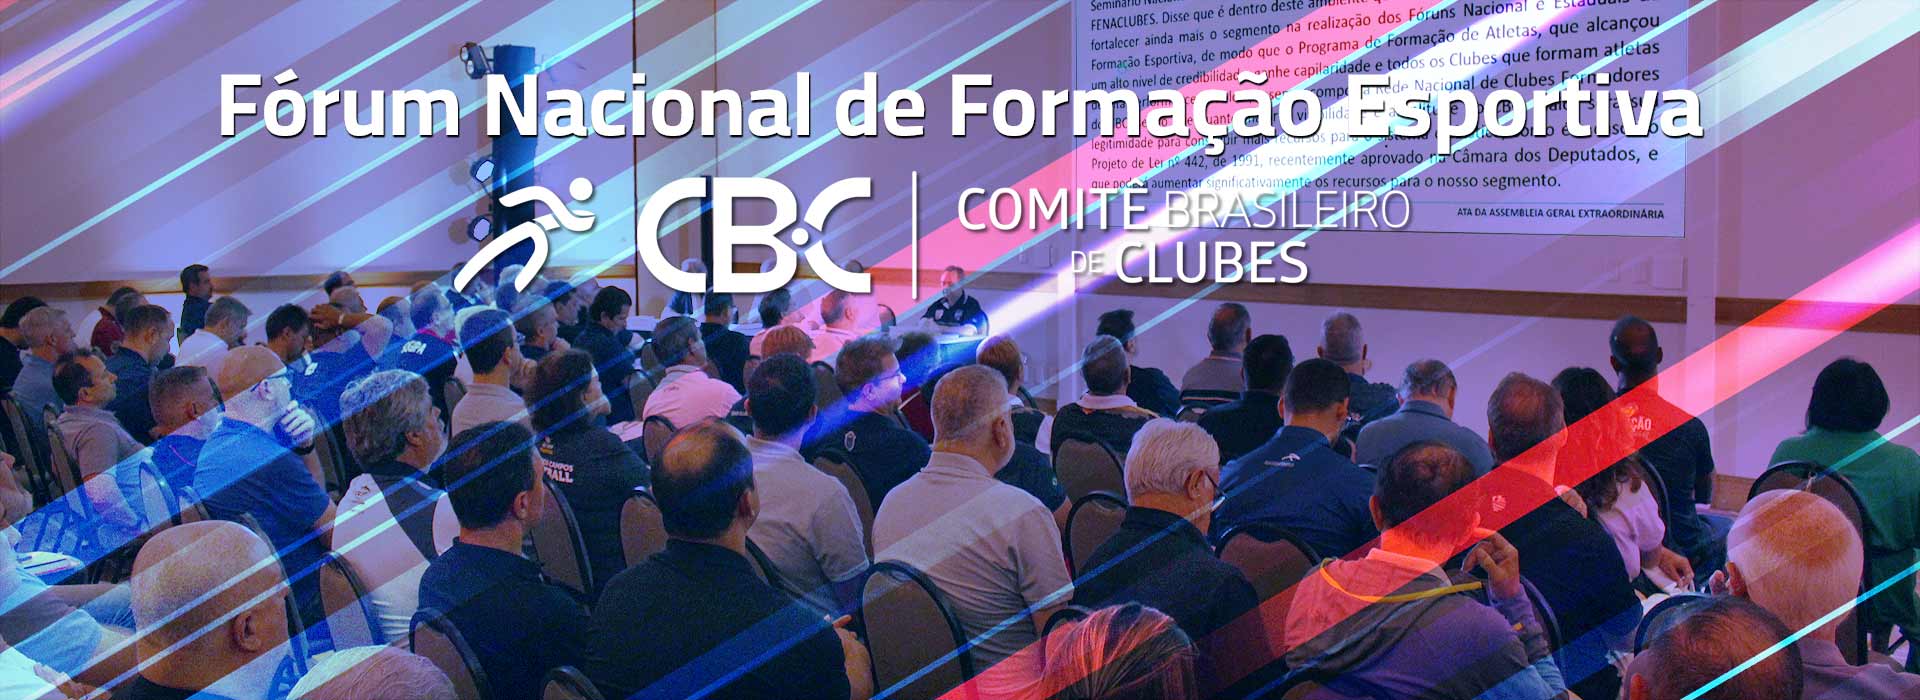 Assembleia Geral Extraordinária do CBC aprova a realização de Fóruns Nacional e Estaduais de Formação Esportiva e a celebração de Acordo de Repasse de Recursos Lotéricos entre a FENACLUBES e o CBC